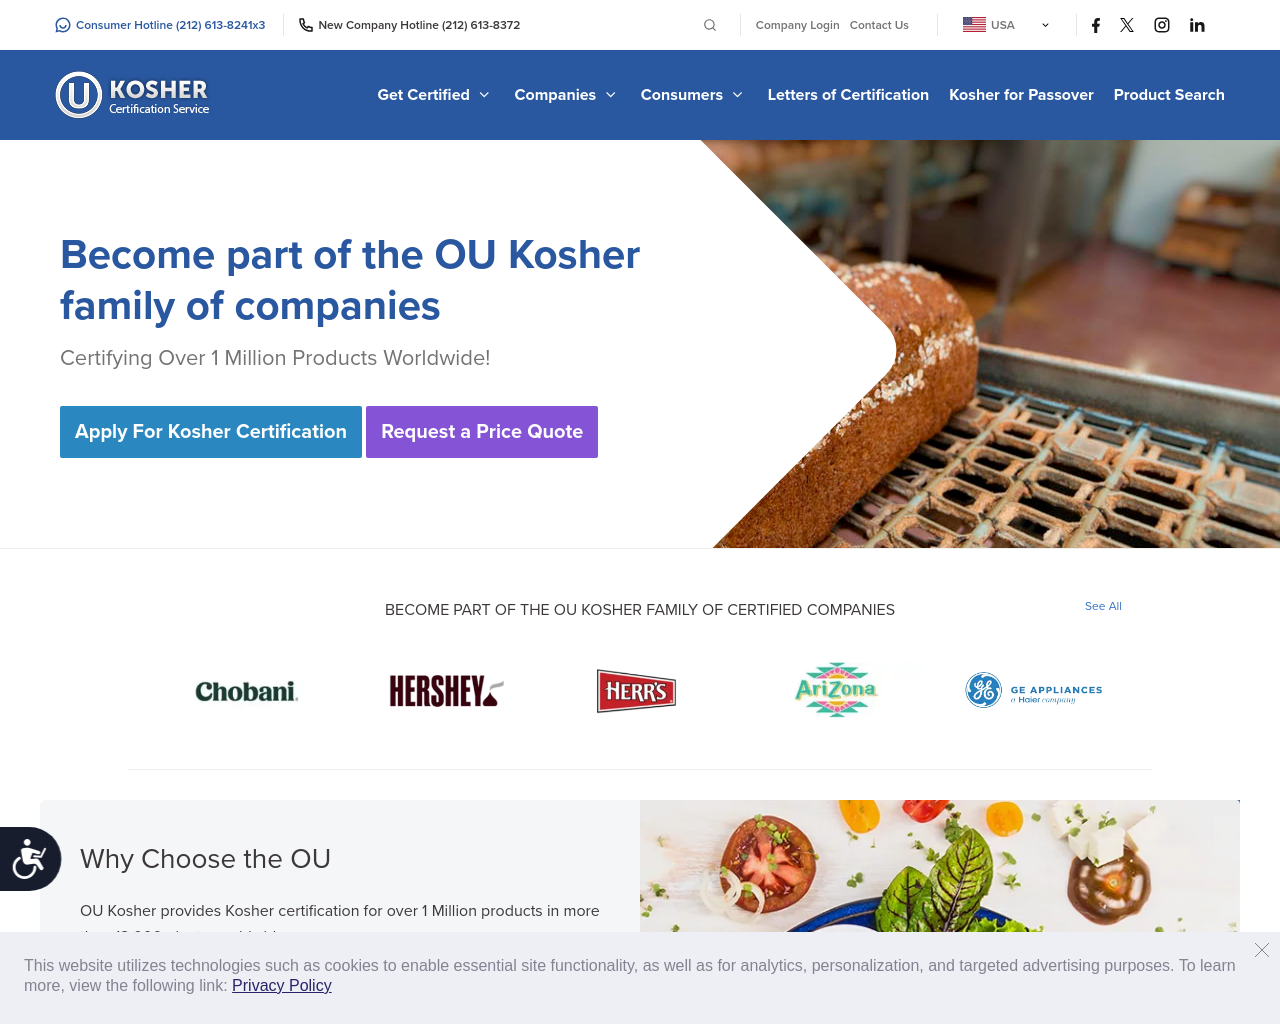 oukosher.org